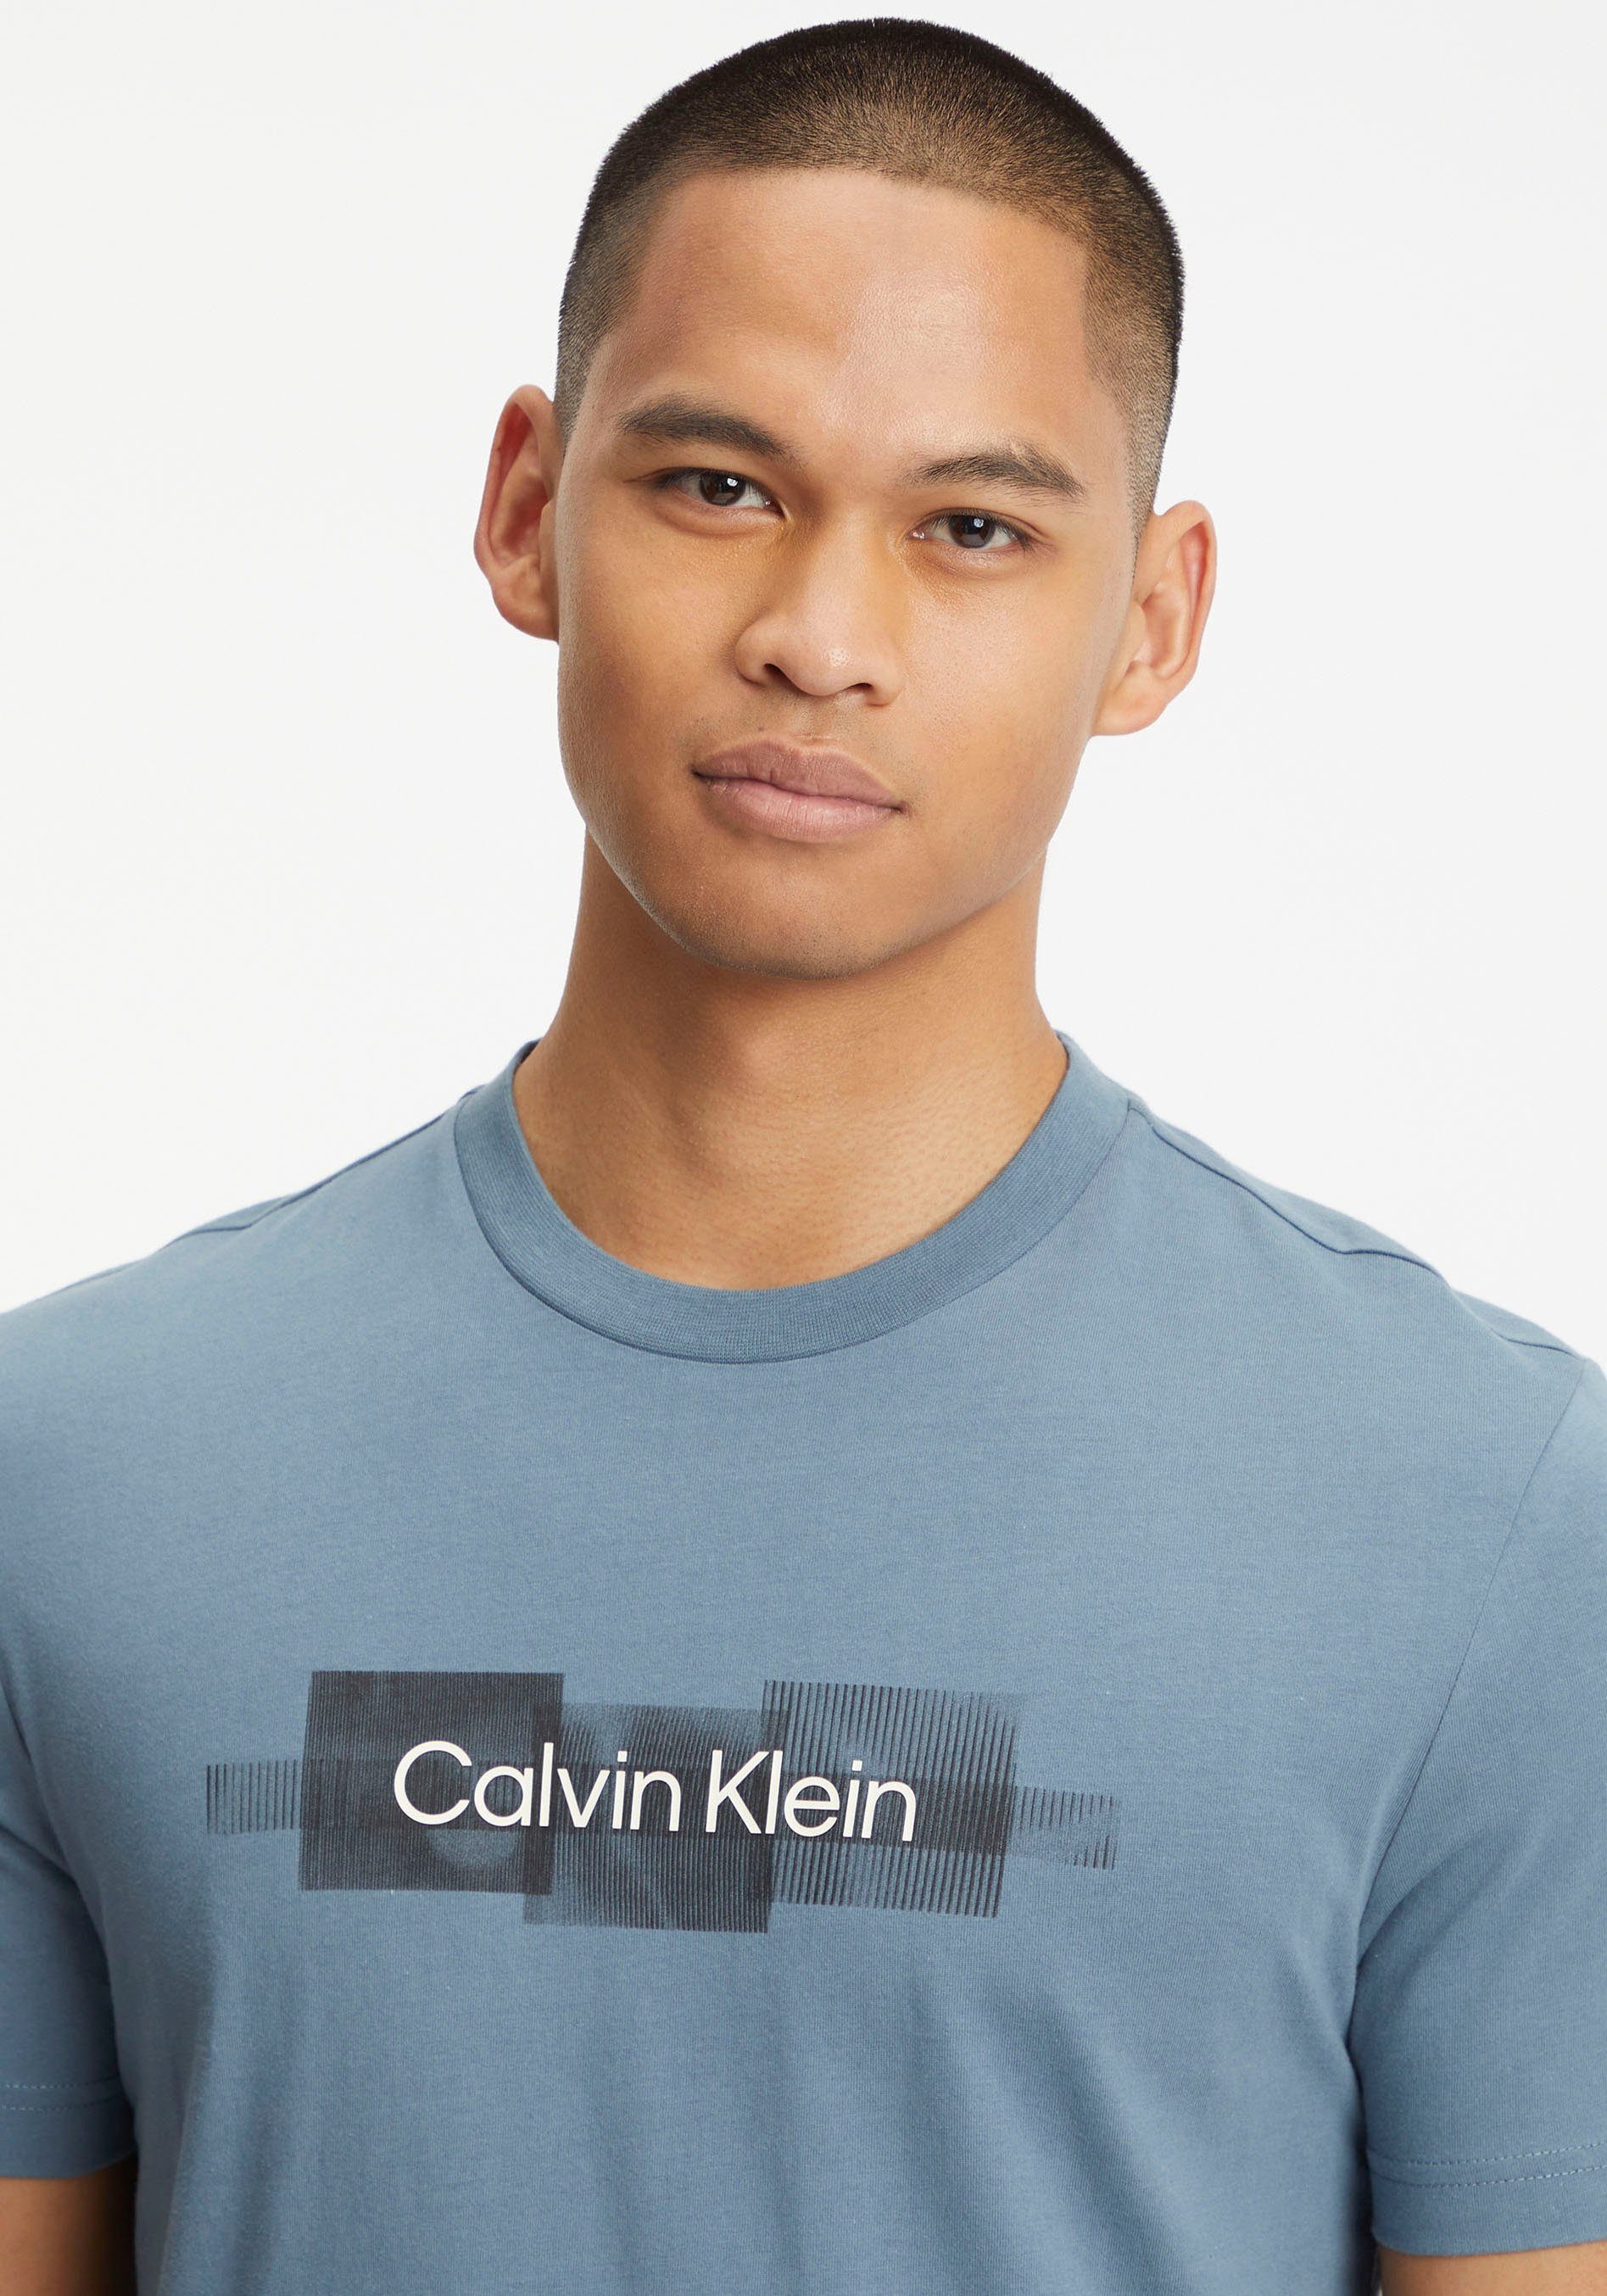 Calvin Klein T-Shirt BOX LOGO Tar STRIPED aus T-SHIRT Grey reiner Baumwolle